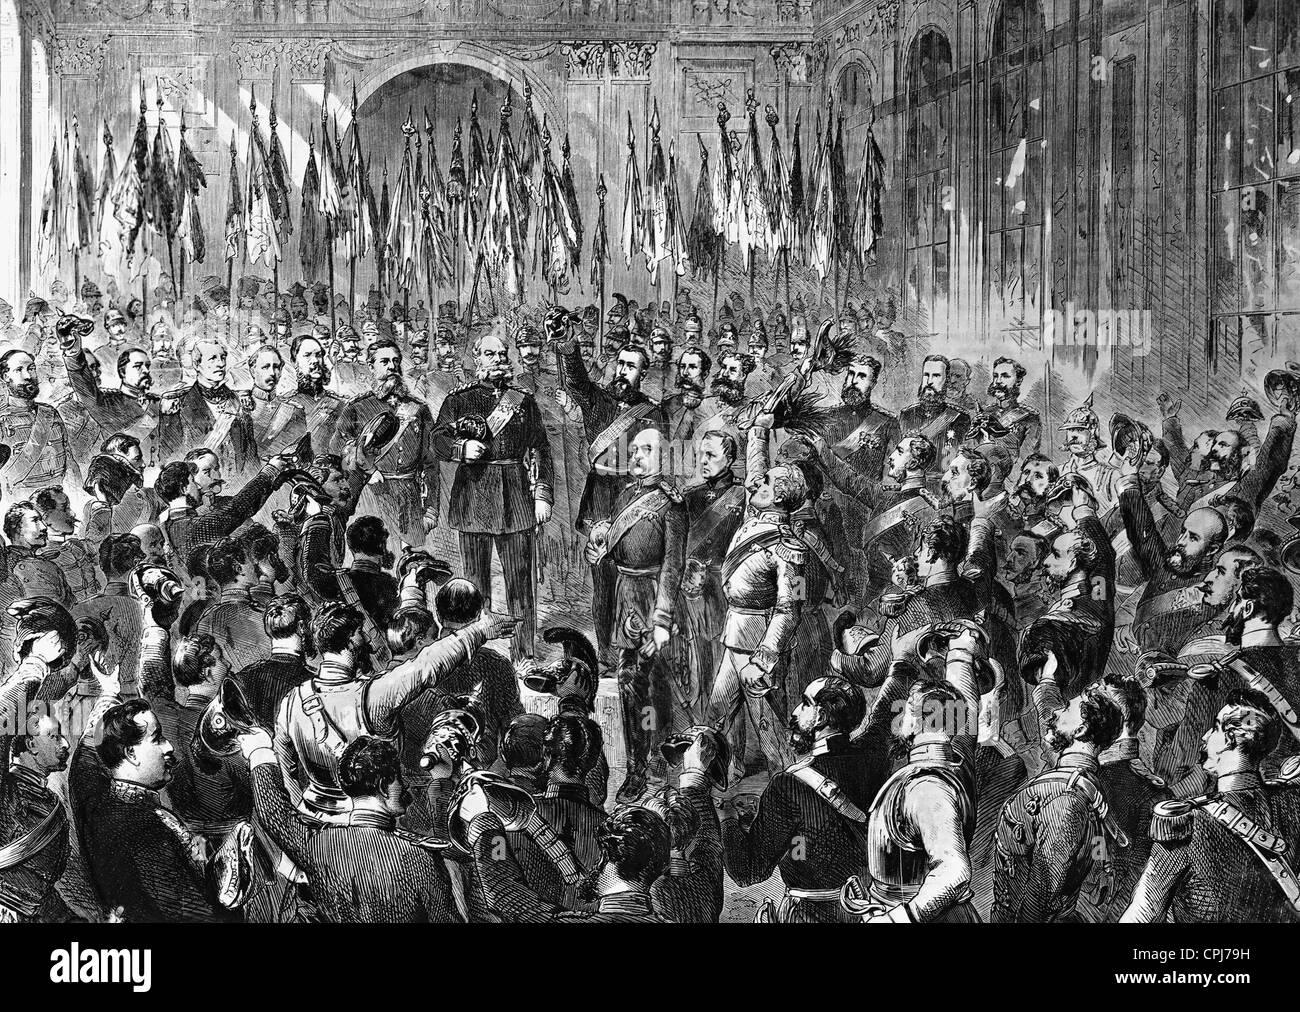 La proclamation de l'empereur dans la galerie des glaces à Versailles, 1871 Banque D'Images